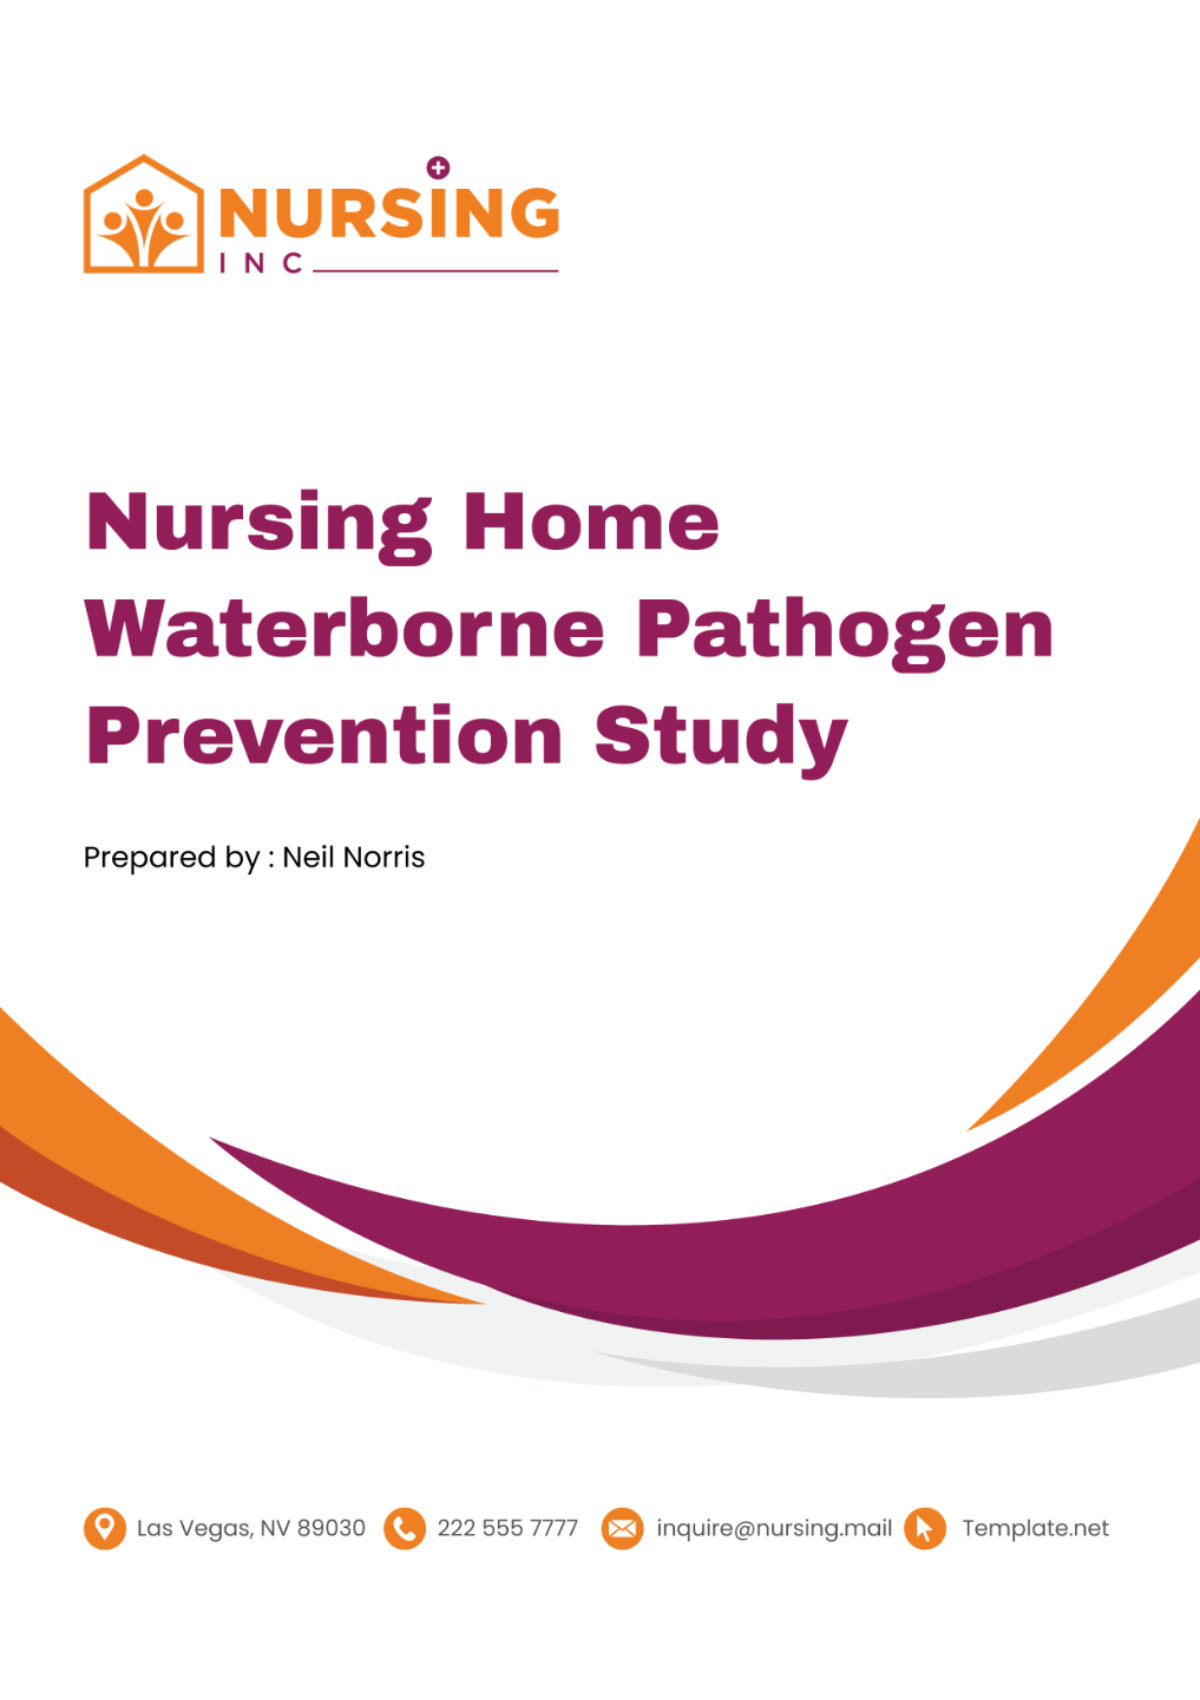 Nursing Home Waterborne Pathogen Prevention Study Template